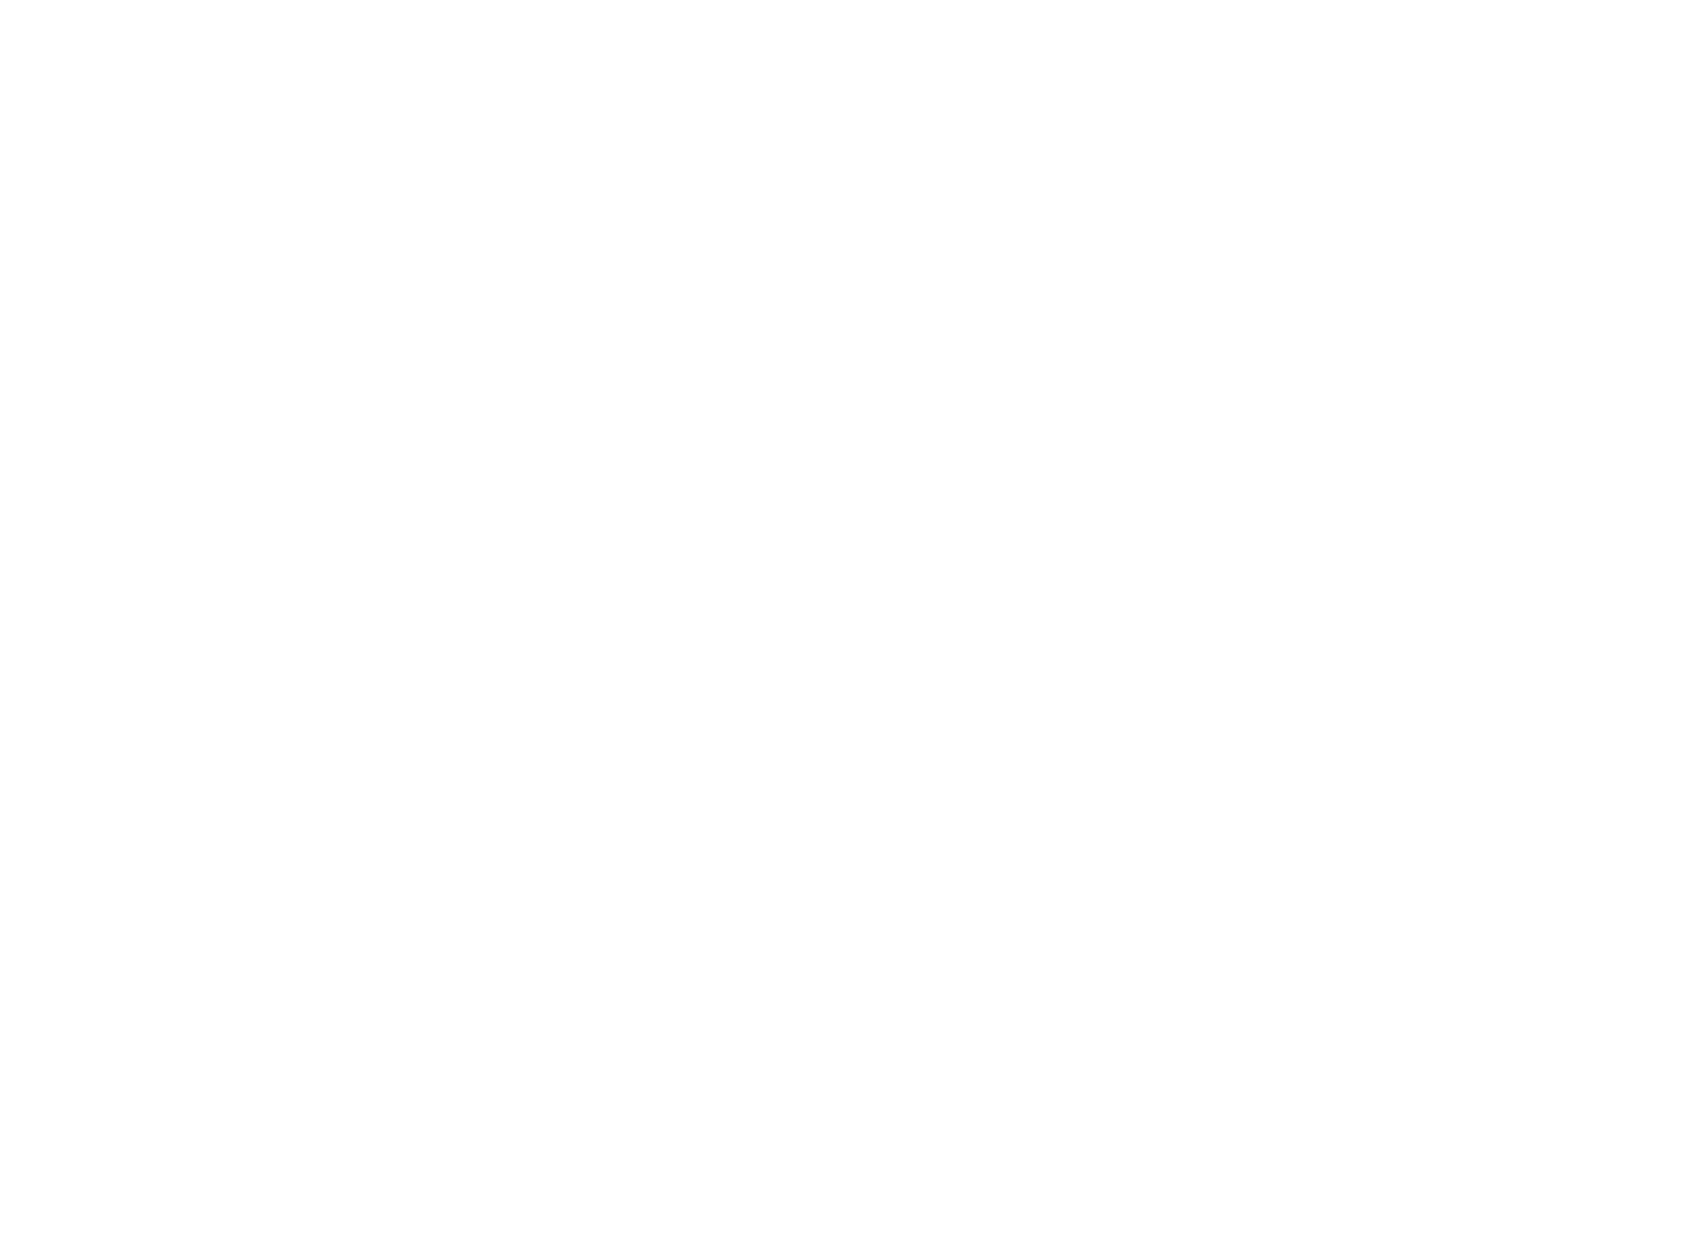 Stryker Corporation logo for dark backgrounds (transparent PNG)